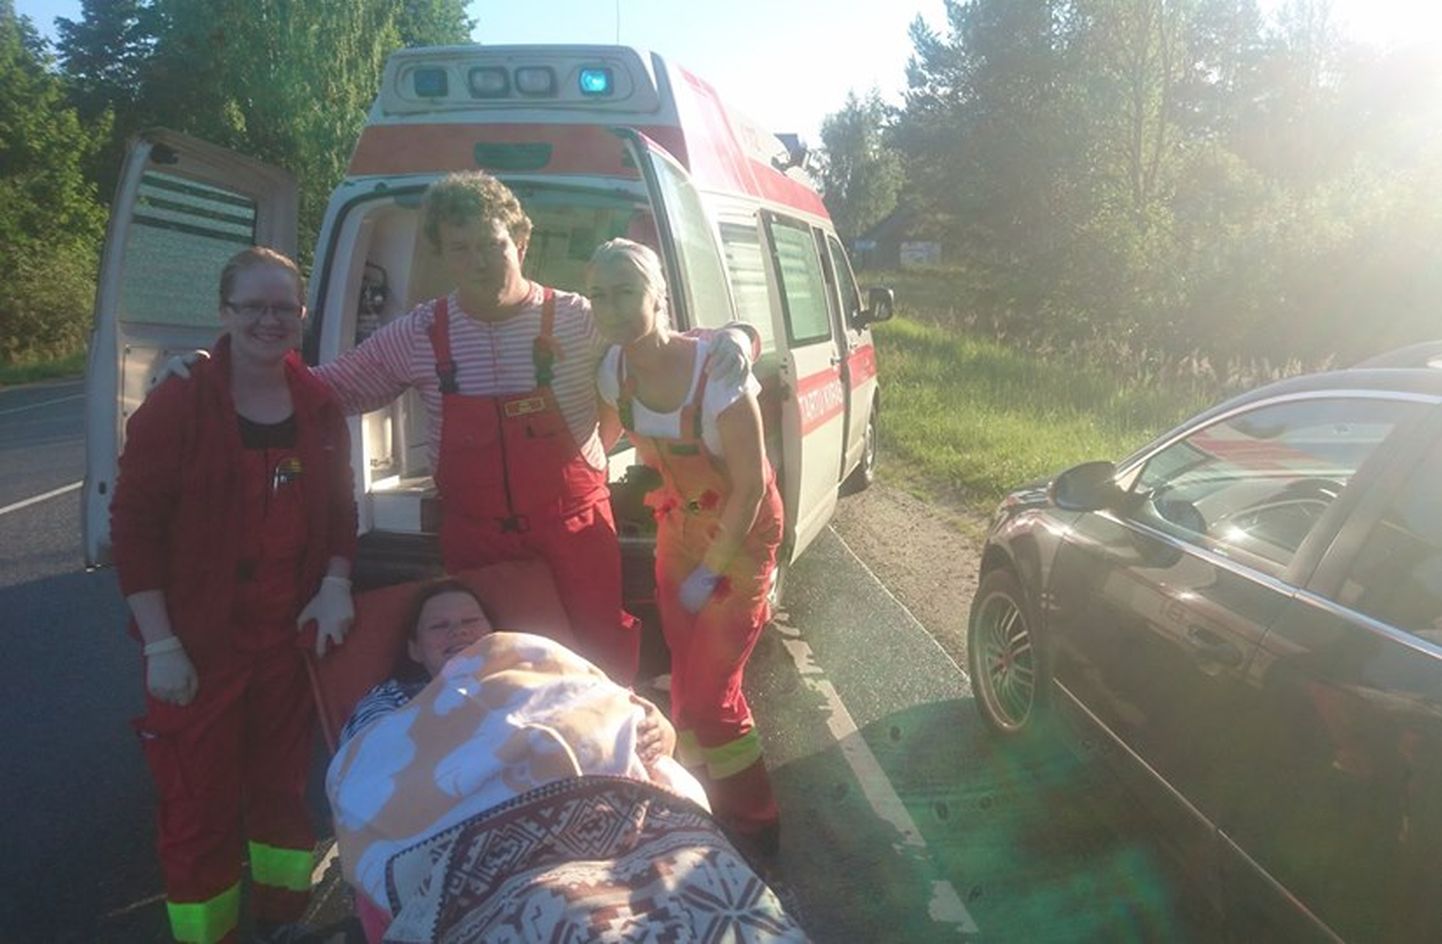 Снимок жительницы Валгамаа, которая родила ребенка на обочине дороги, не доехав до Тарту около 32 км, связали с закрытием Валгаского родильного отделения.